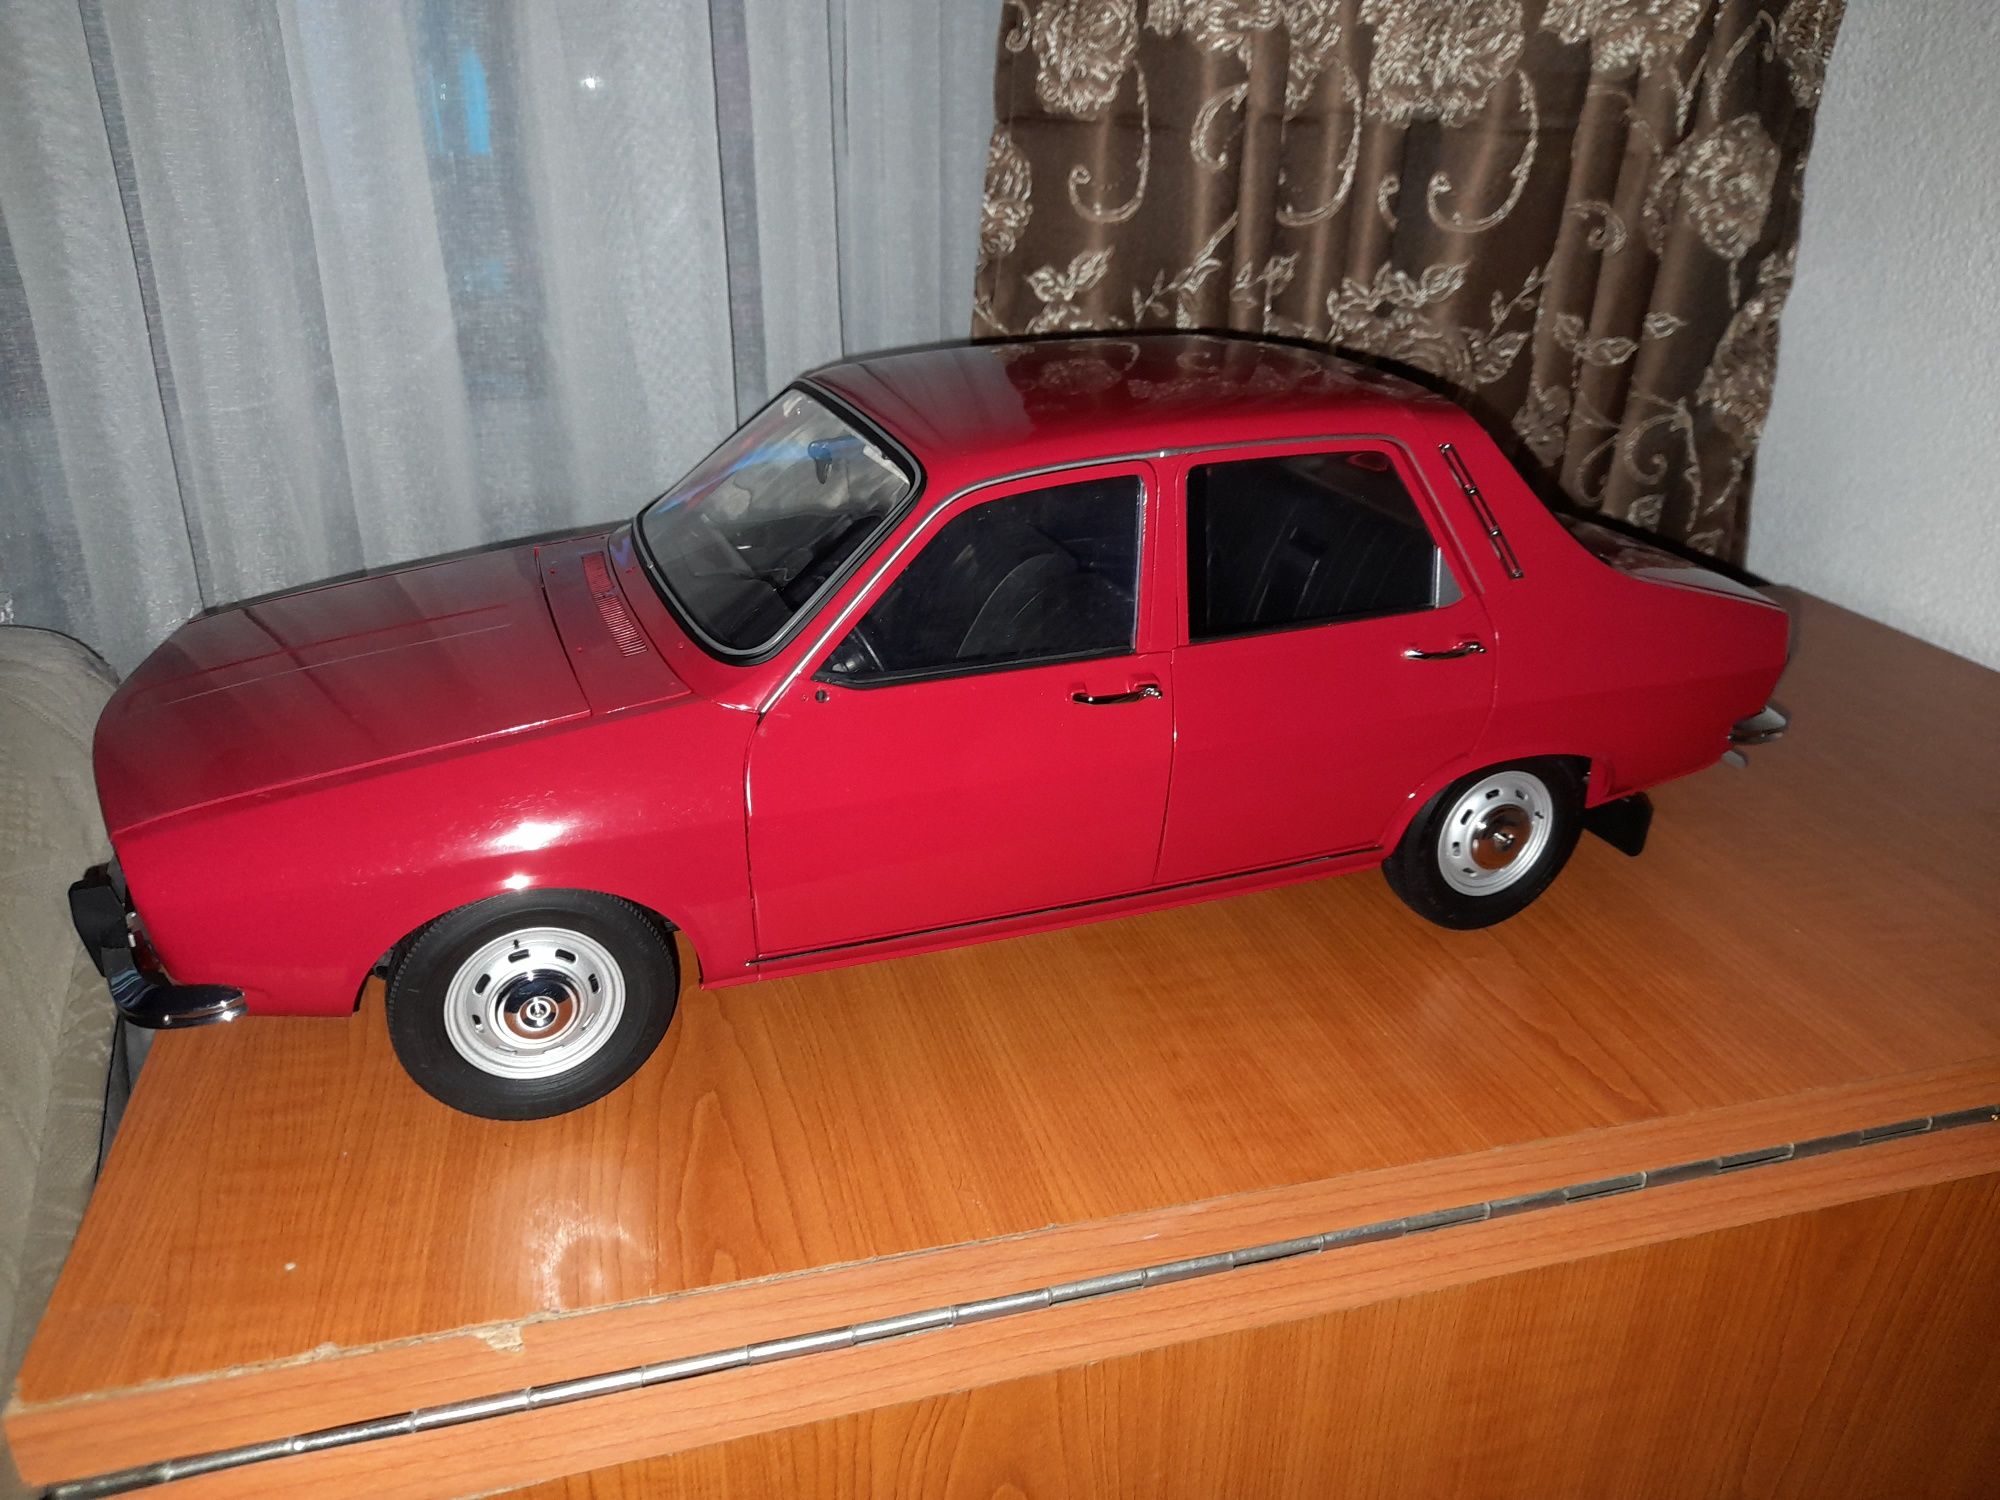 Macheta Dacia 1300 colecția completă de reviste impecabilă